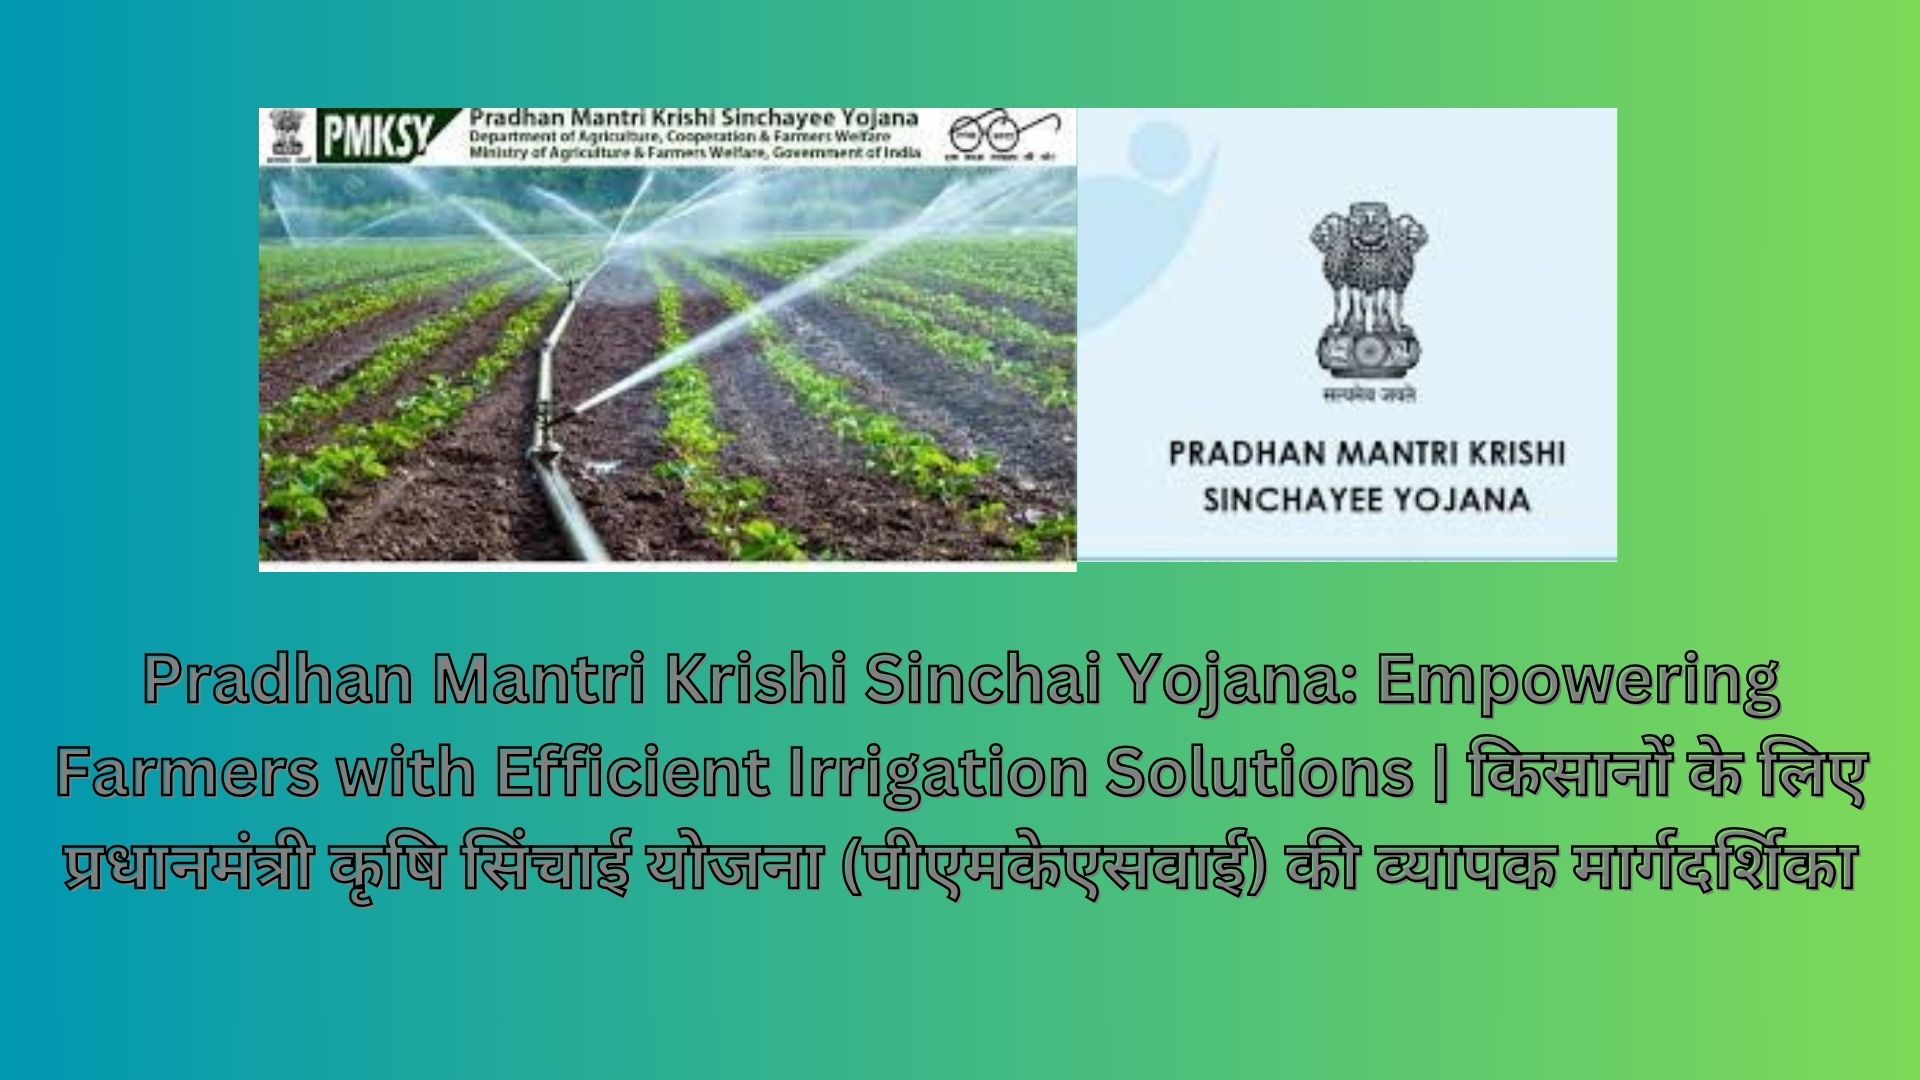 Pradhan Mantri Krishi Sinchai Yojana: Empowering Farmers with Efficient Irrigation Solutions | किसानों के लिए प्रधानमंत्री कृषि सिंचाई योजना (पीएमकेएसवाई) की व्यापक मार्गदर्शिका